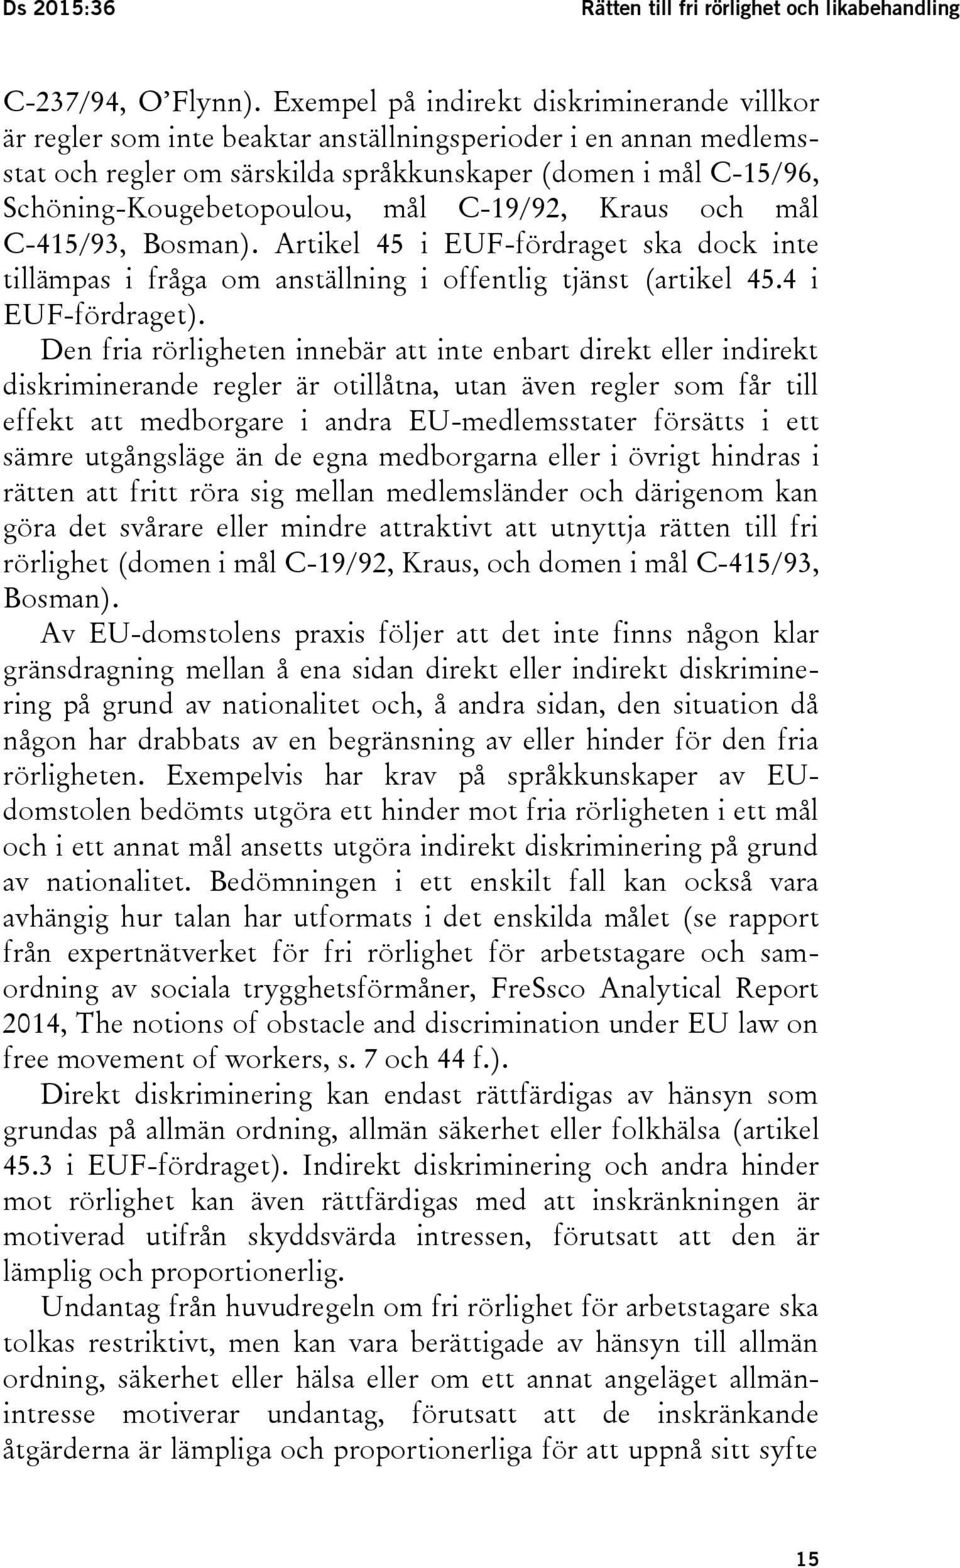 Schöning-Kougebetopoulou, mål C-19/92, Kraus och mål C-415/93, Bosman). Artikel 45 i EUF-fördraget ska dock inte tillämpas i fråga om anställning i offentlig tjänst (artikel 45.4 i EUF-fördraget).